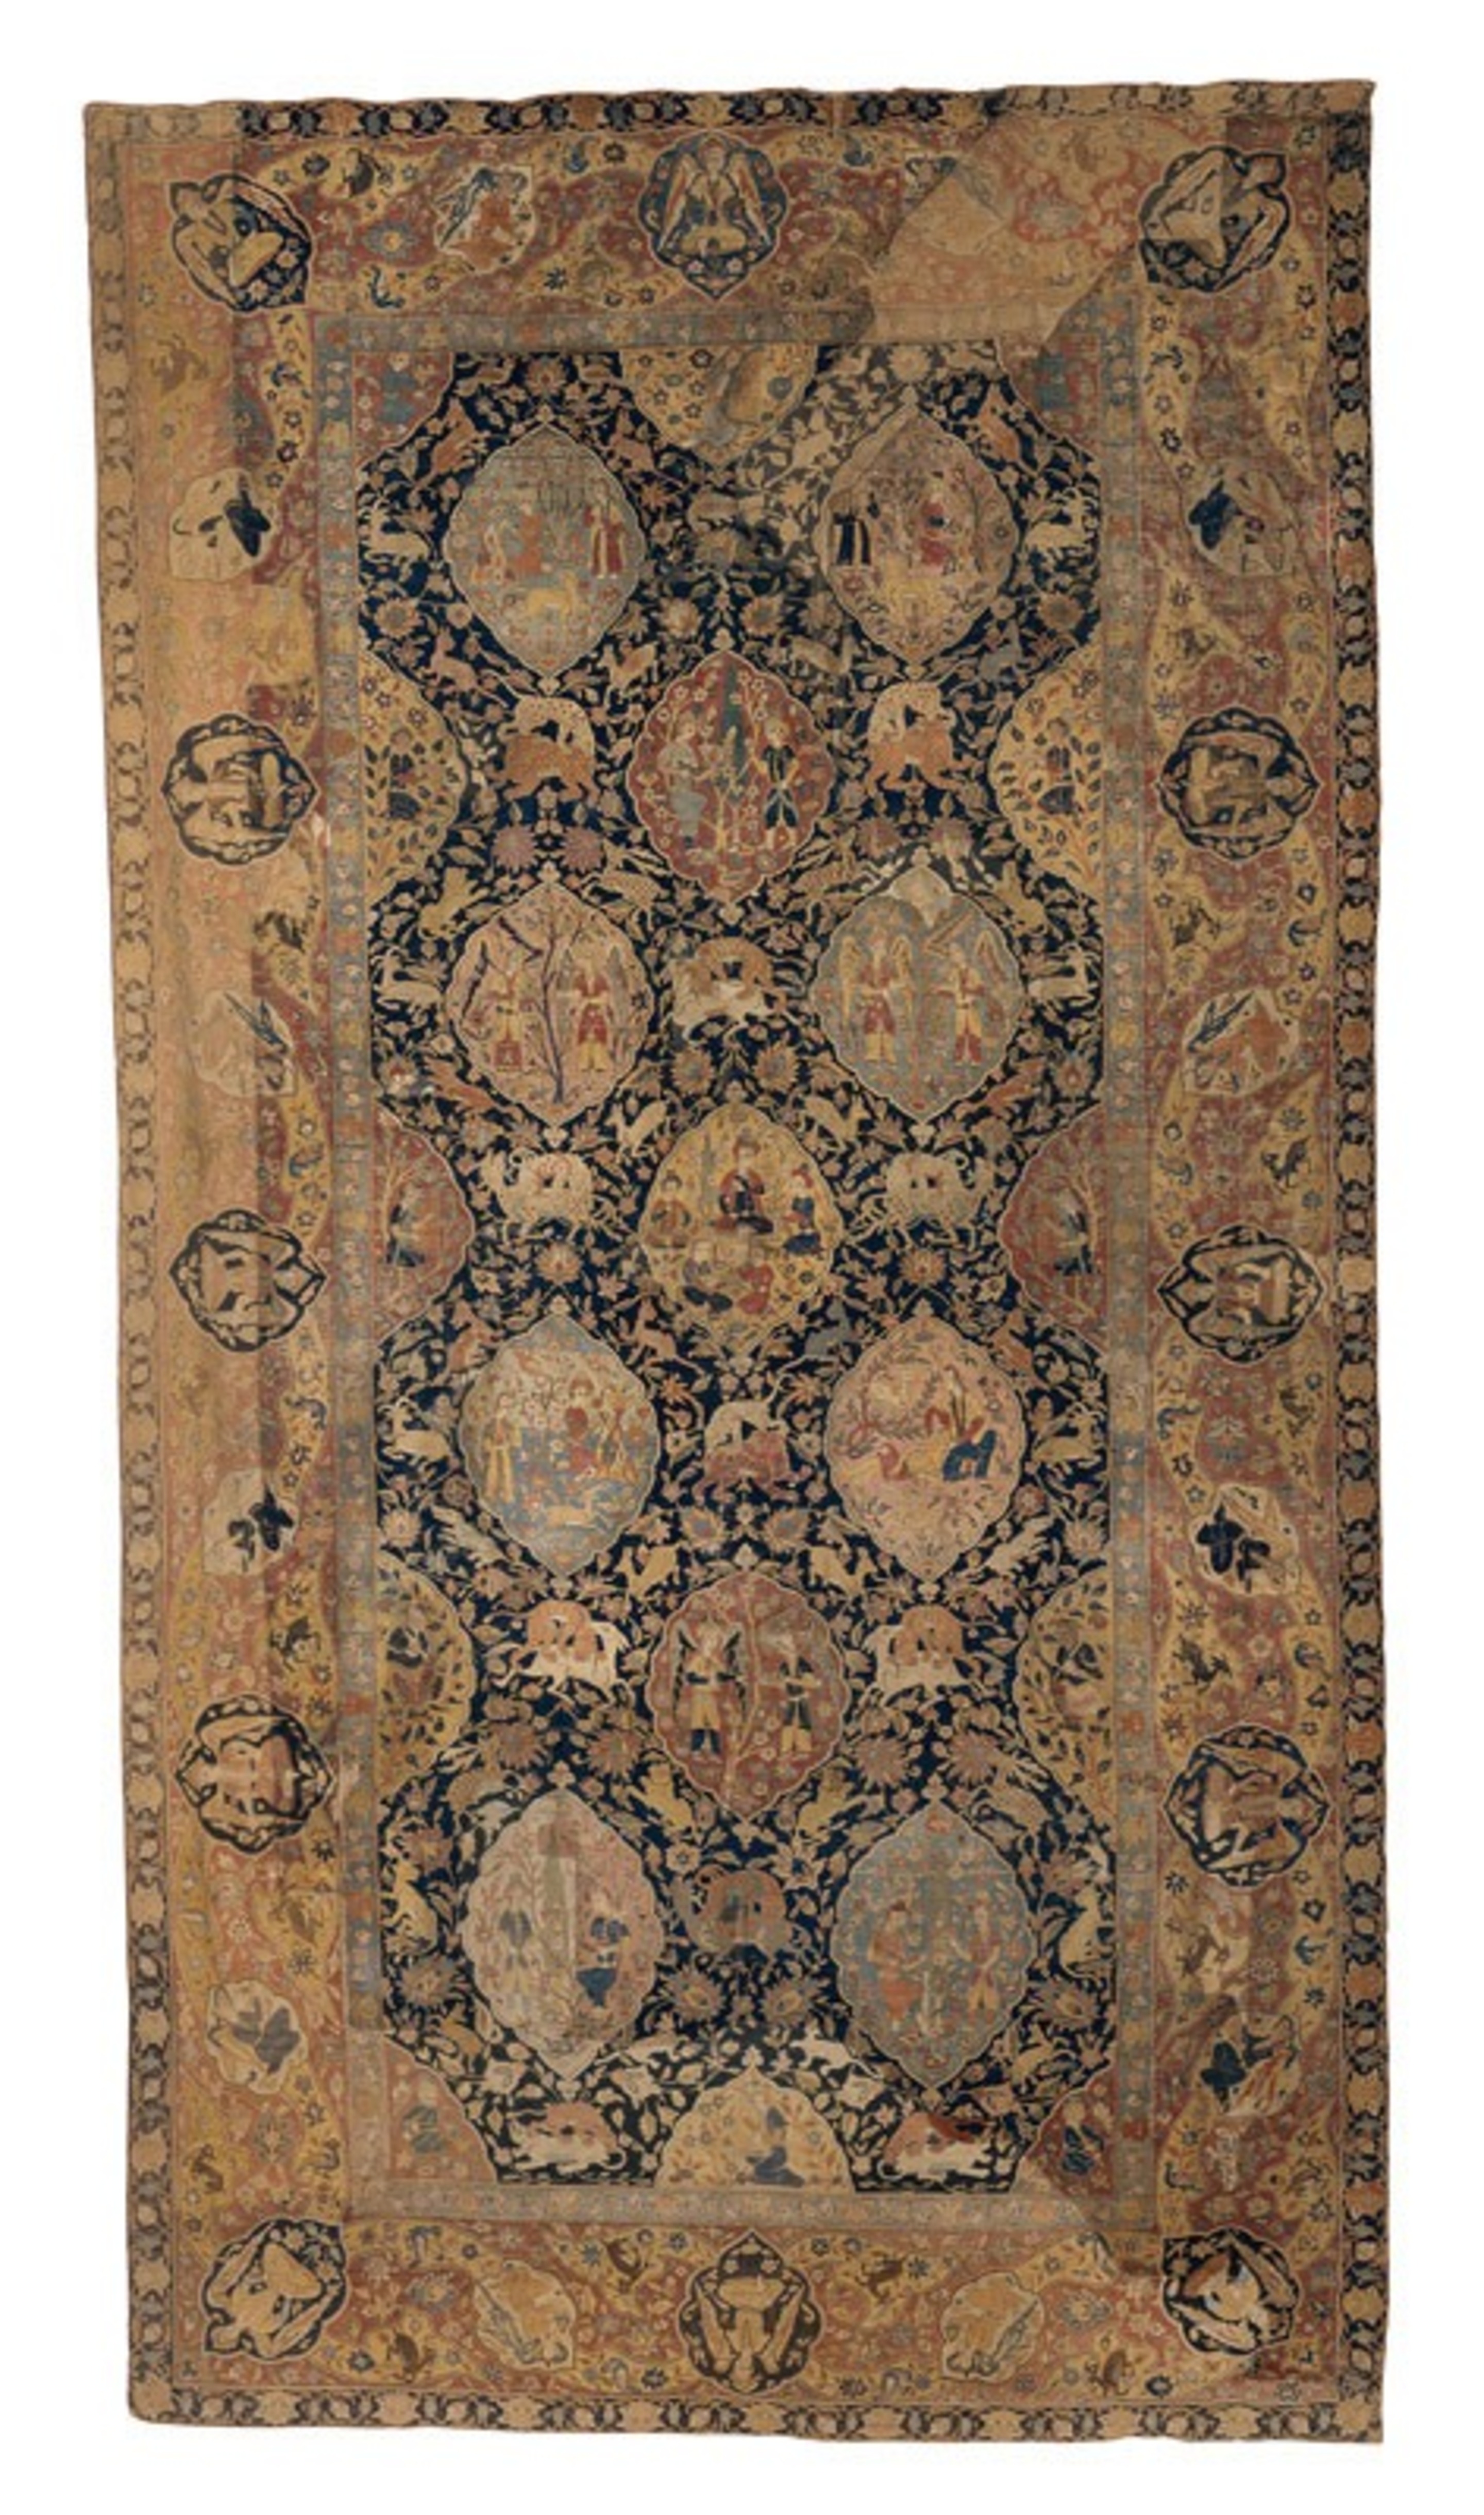 Tapis de réception de type Sanguszko, Kirman, XVIIe siècle. © © Lyon, musée des Tissus – D.R.